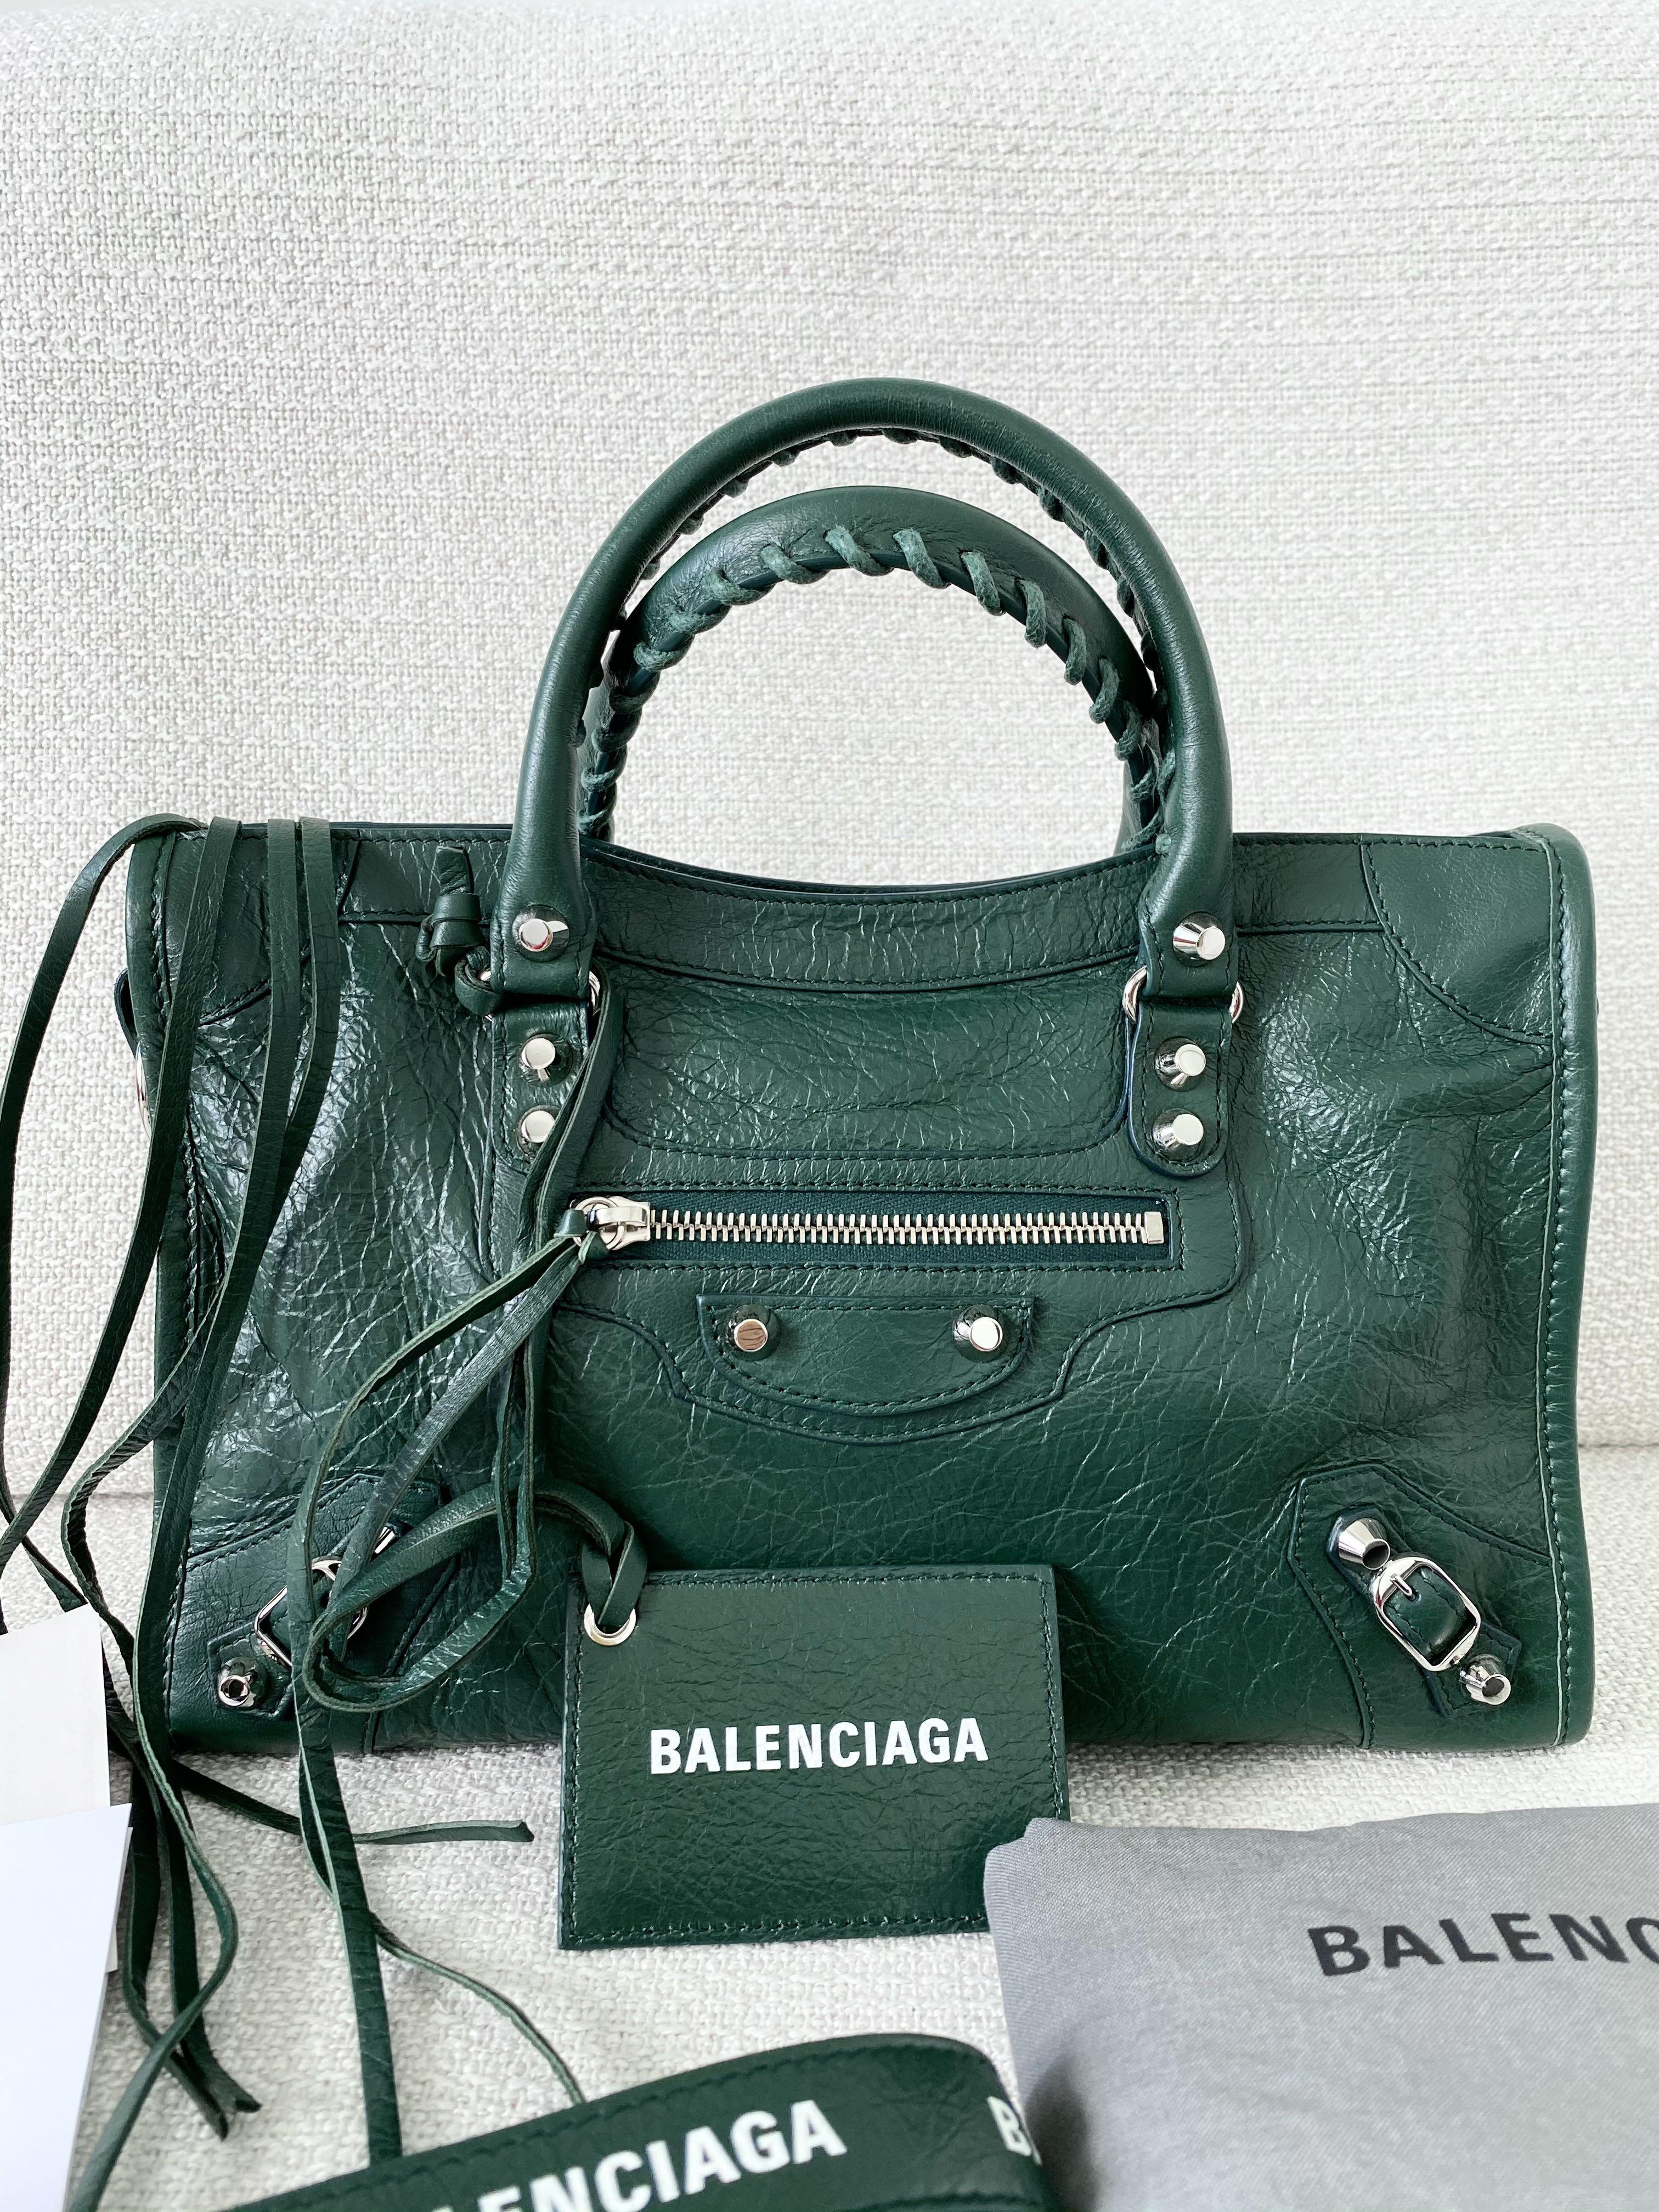 Balenciaga  Bags  Authentic Dark Green Balenciaga City  Poshmark